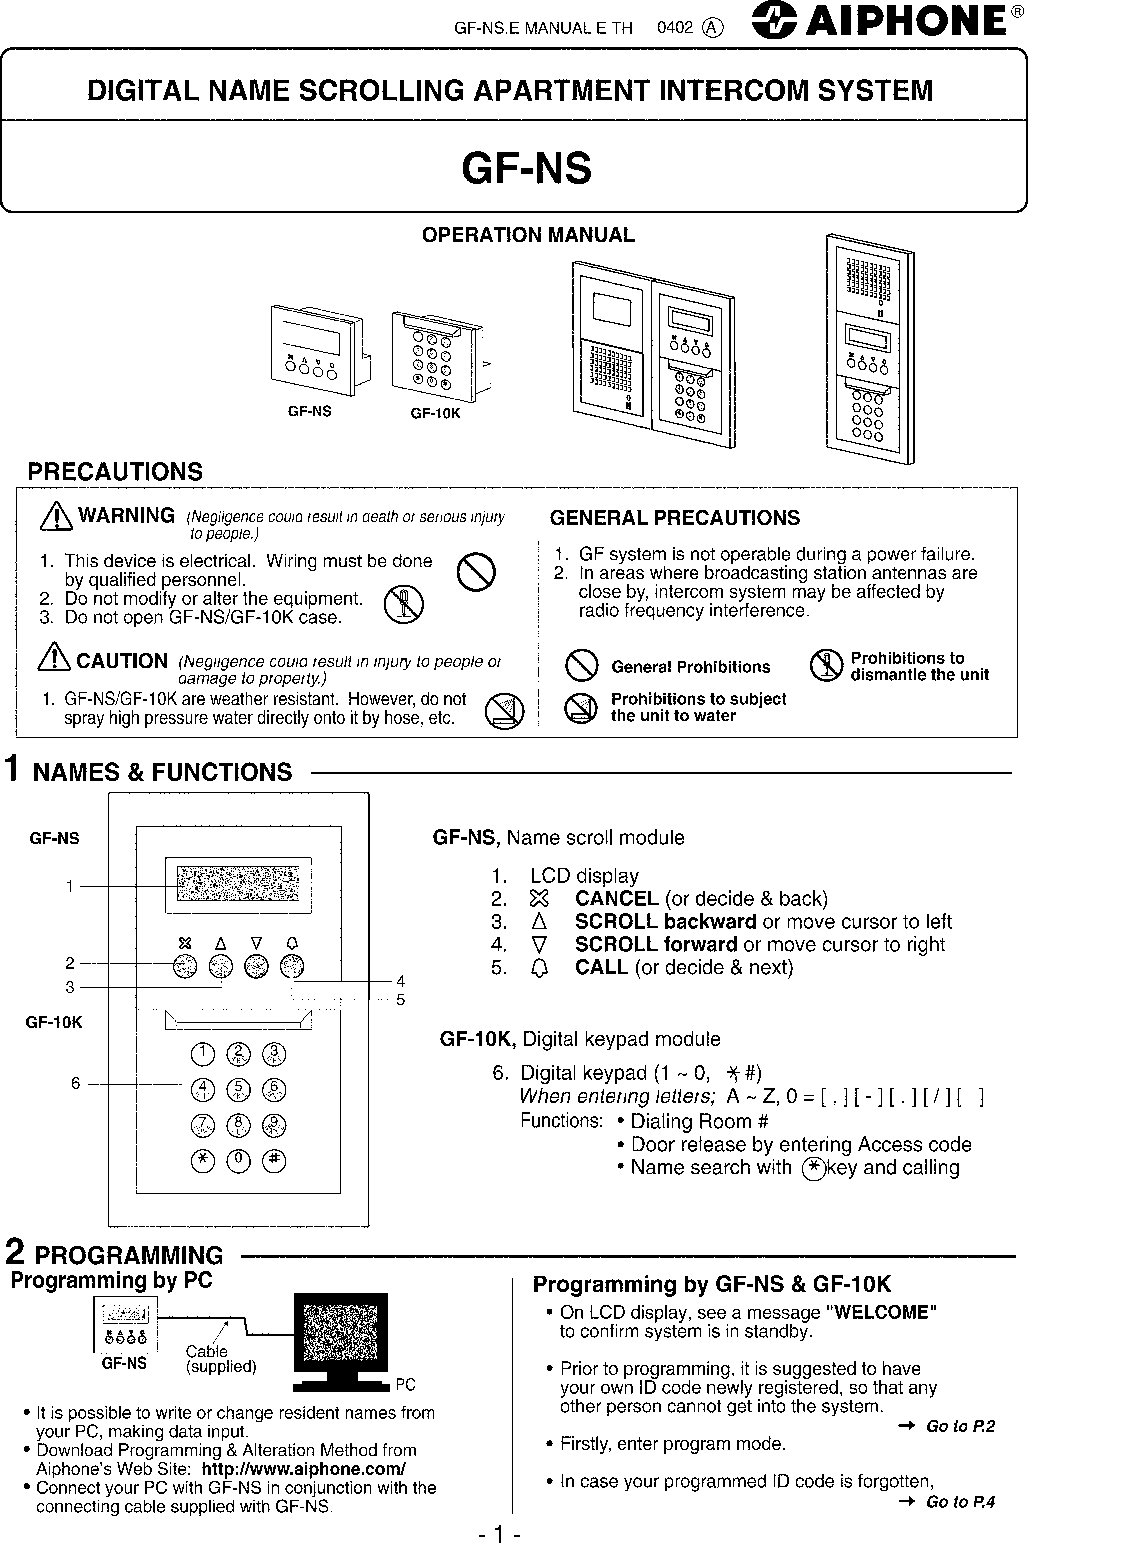 Aiphone GF-10K User Manual